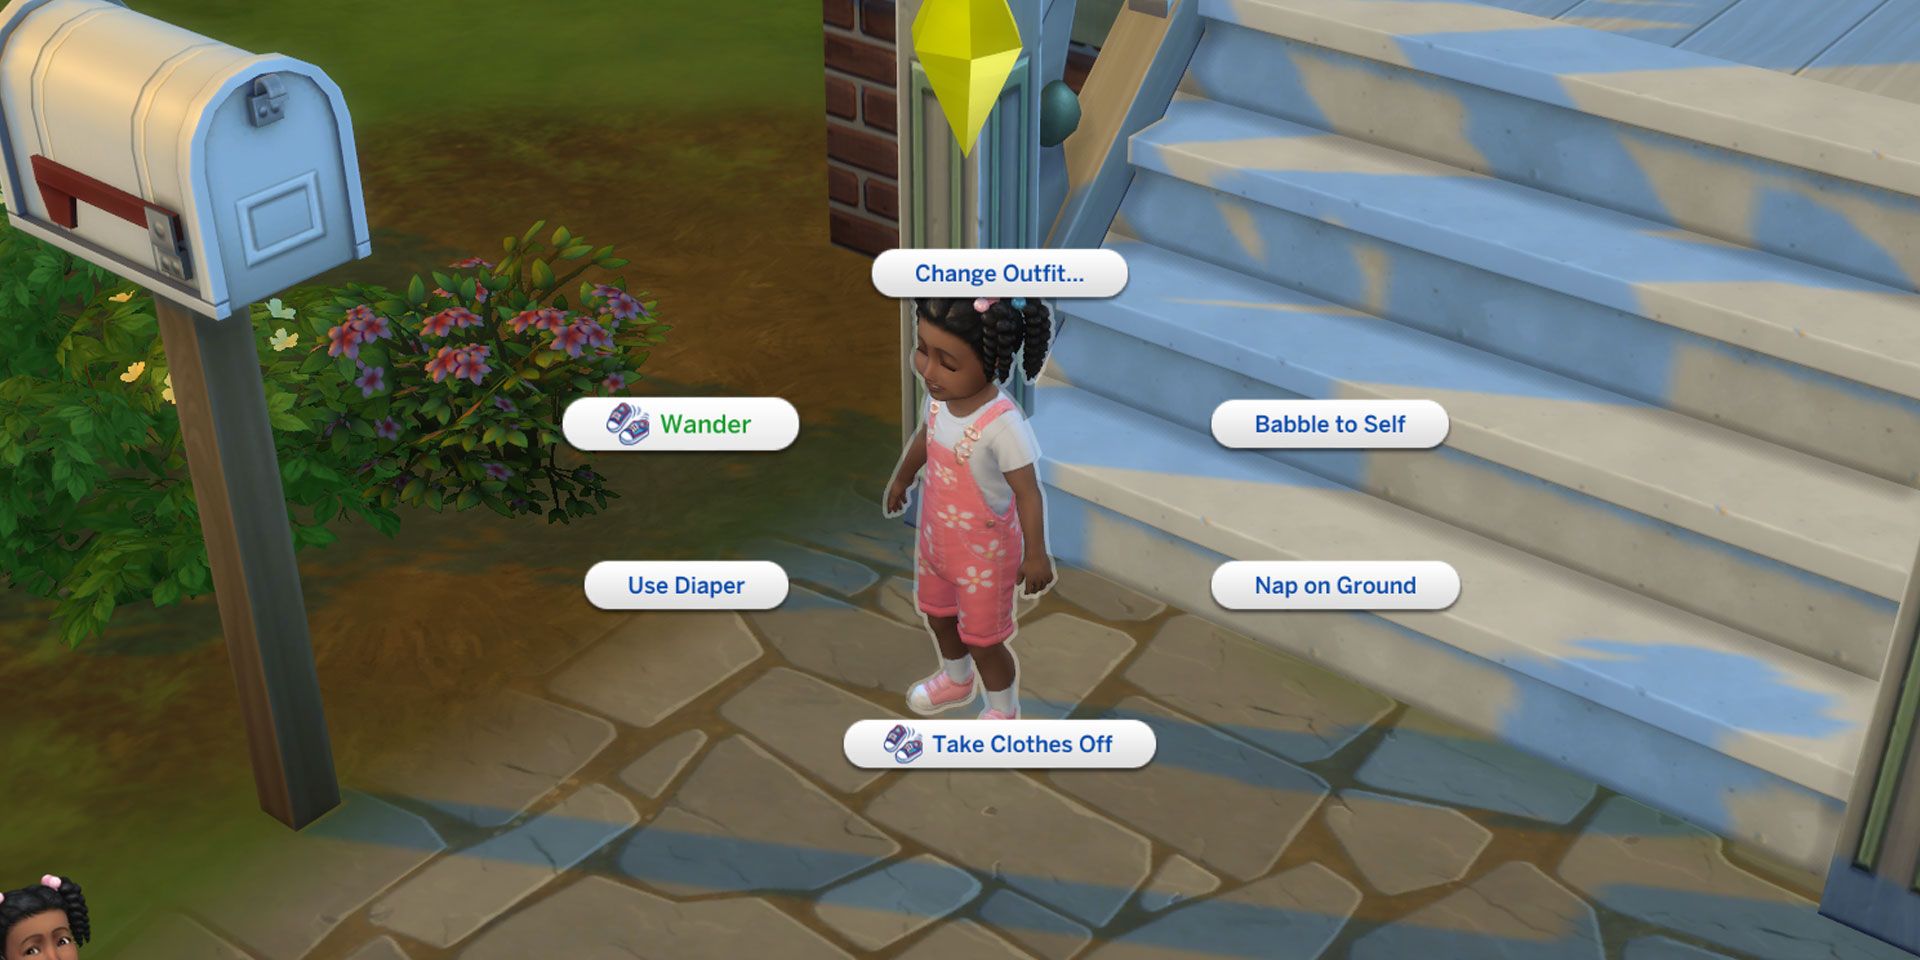 Un tout-petit dans Les Sims 4 se tient à l'extérieur, prêt à se balader. L'option de balade est sélectionnée dans le menu circulaire.